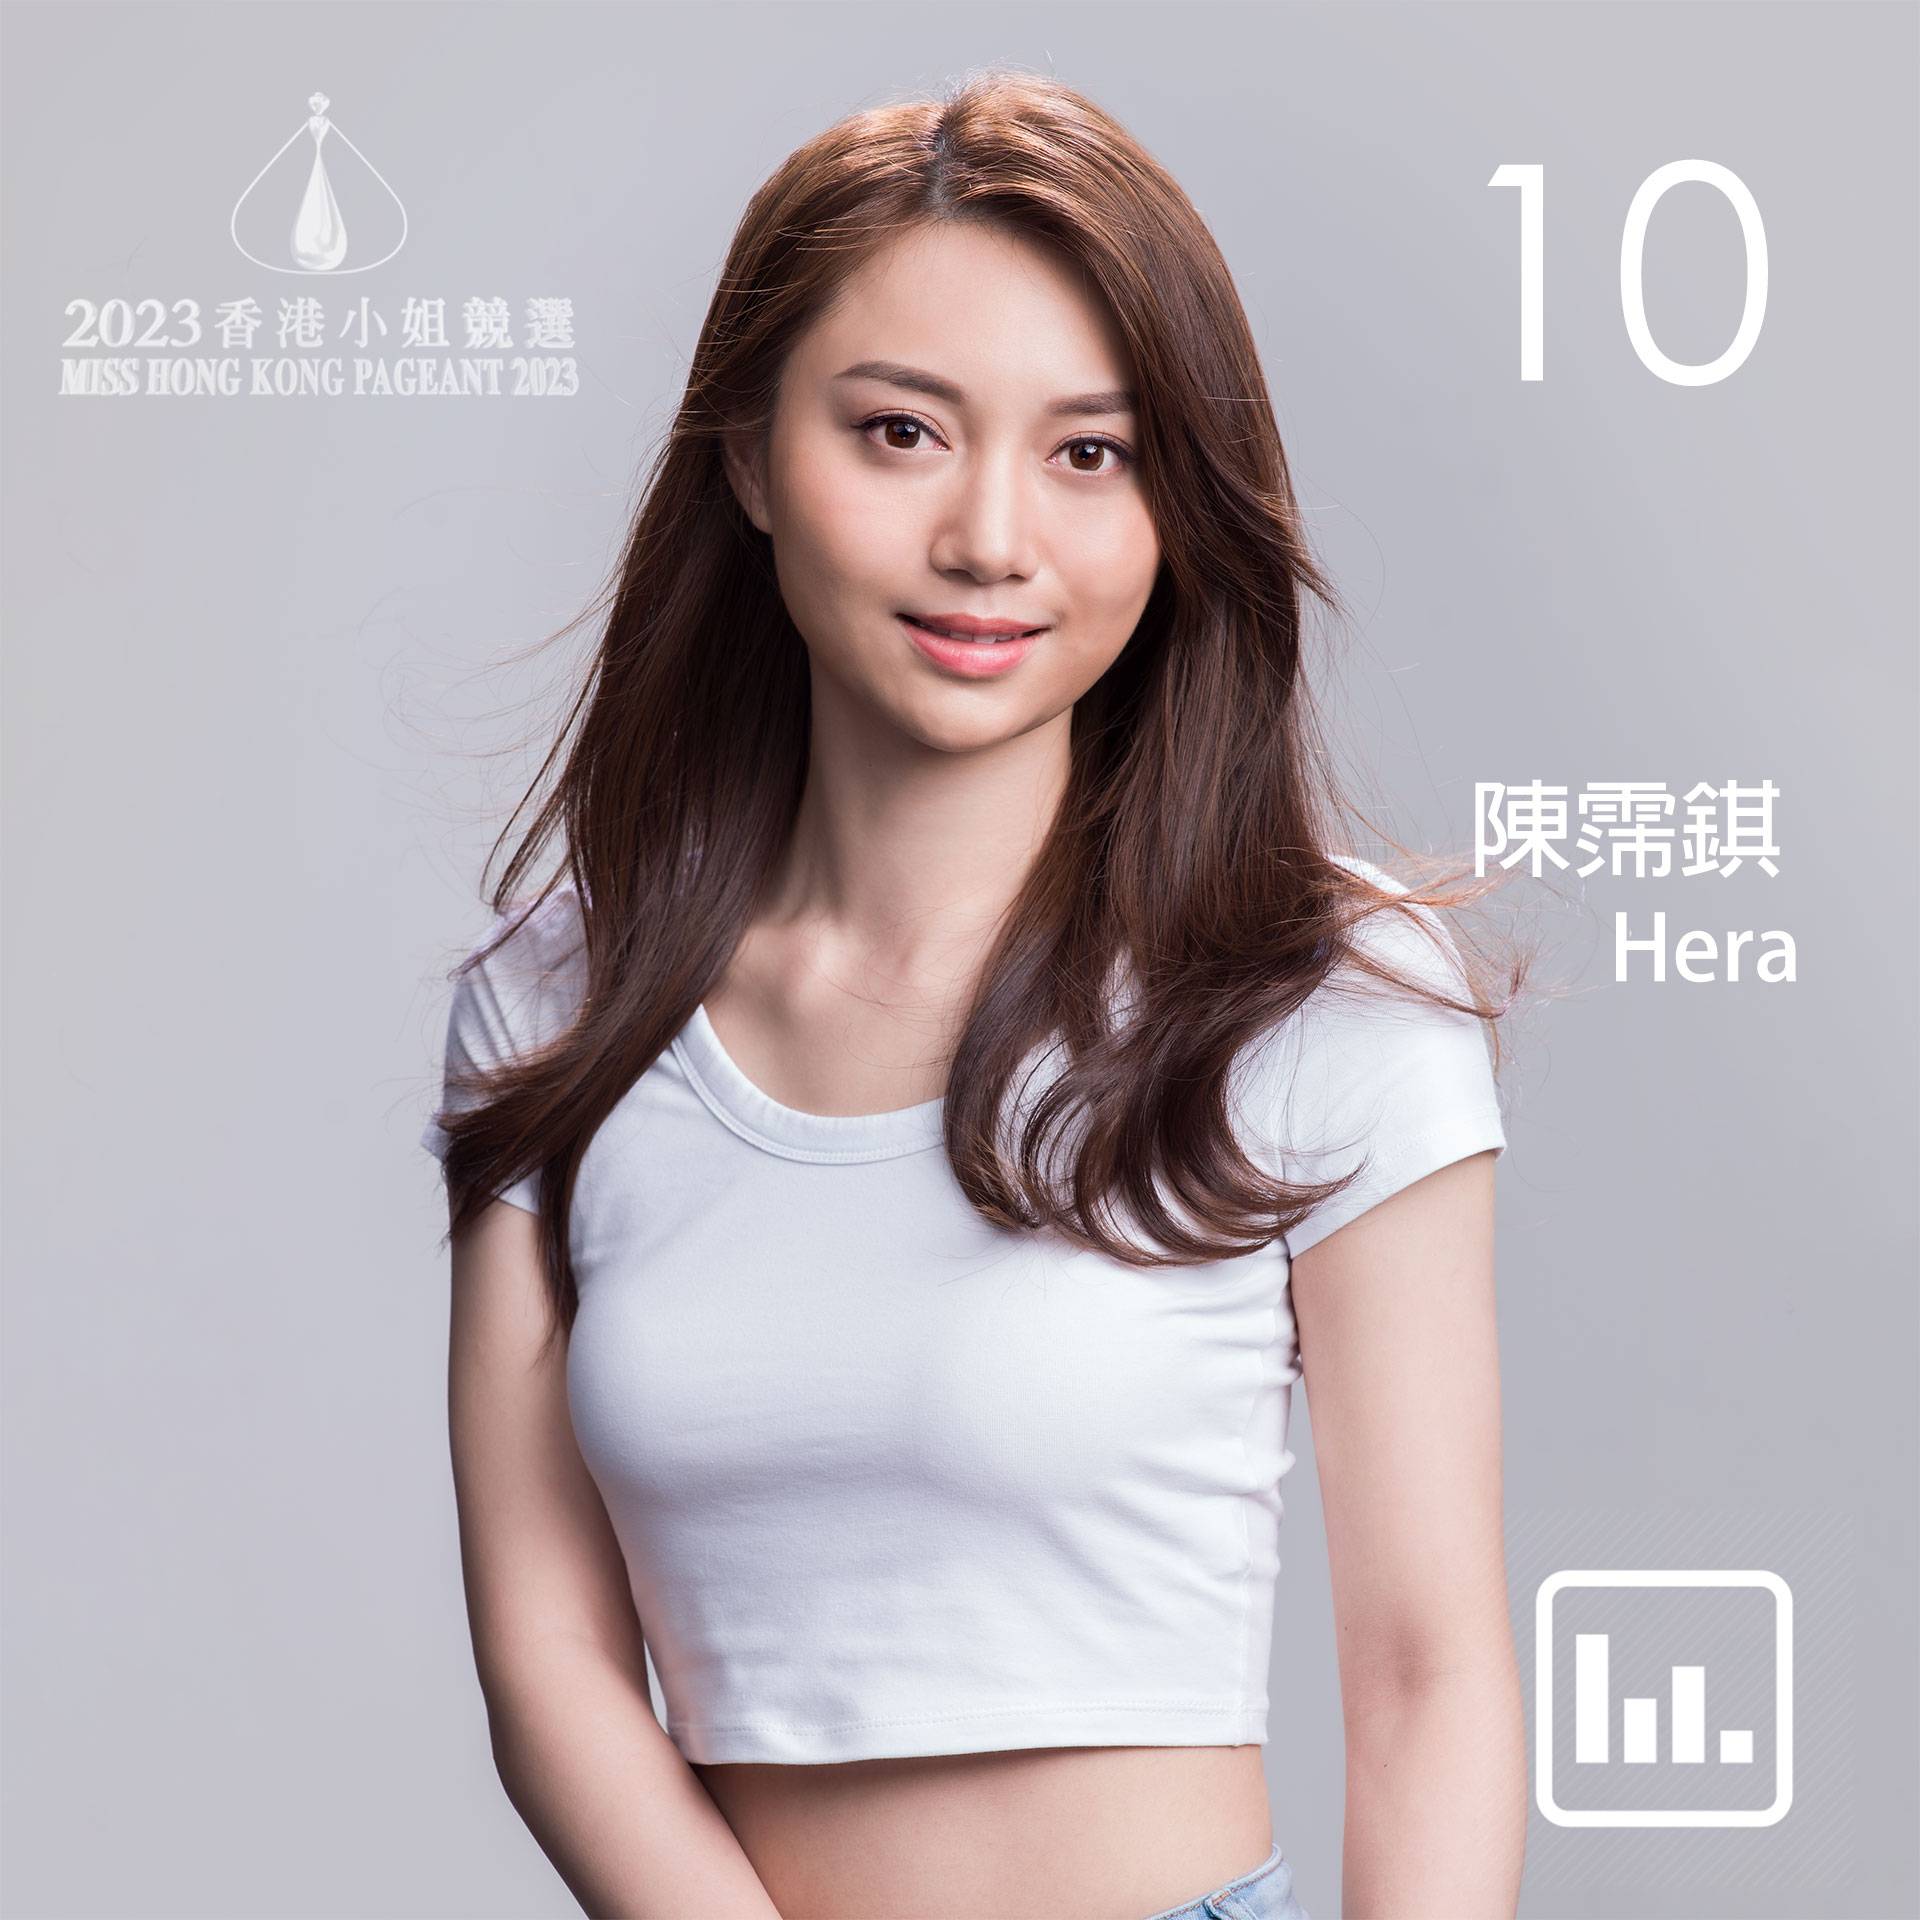 香港小姐2023 陳霈錤 陳霈錤 10號 hera 陳霈錤 10號佳麗陳霈錤Hera Chan）